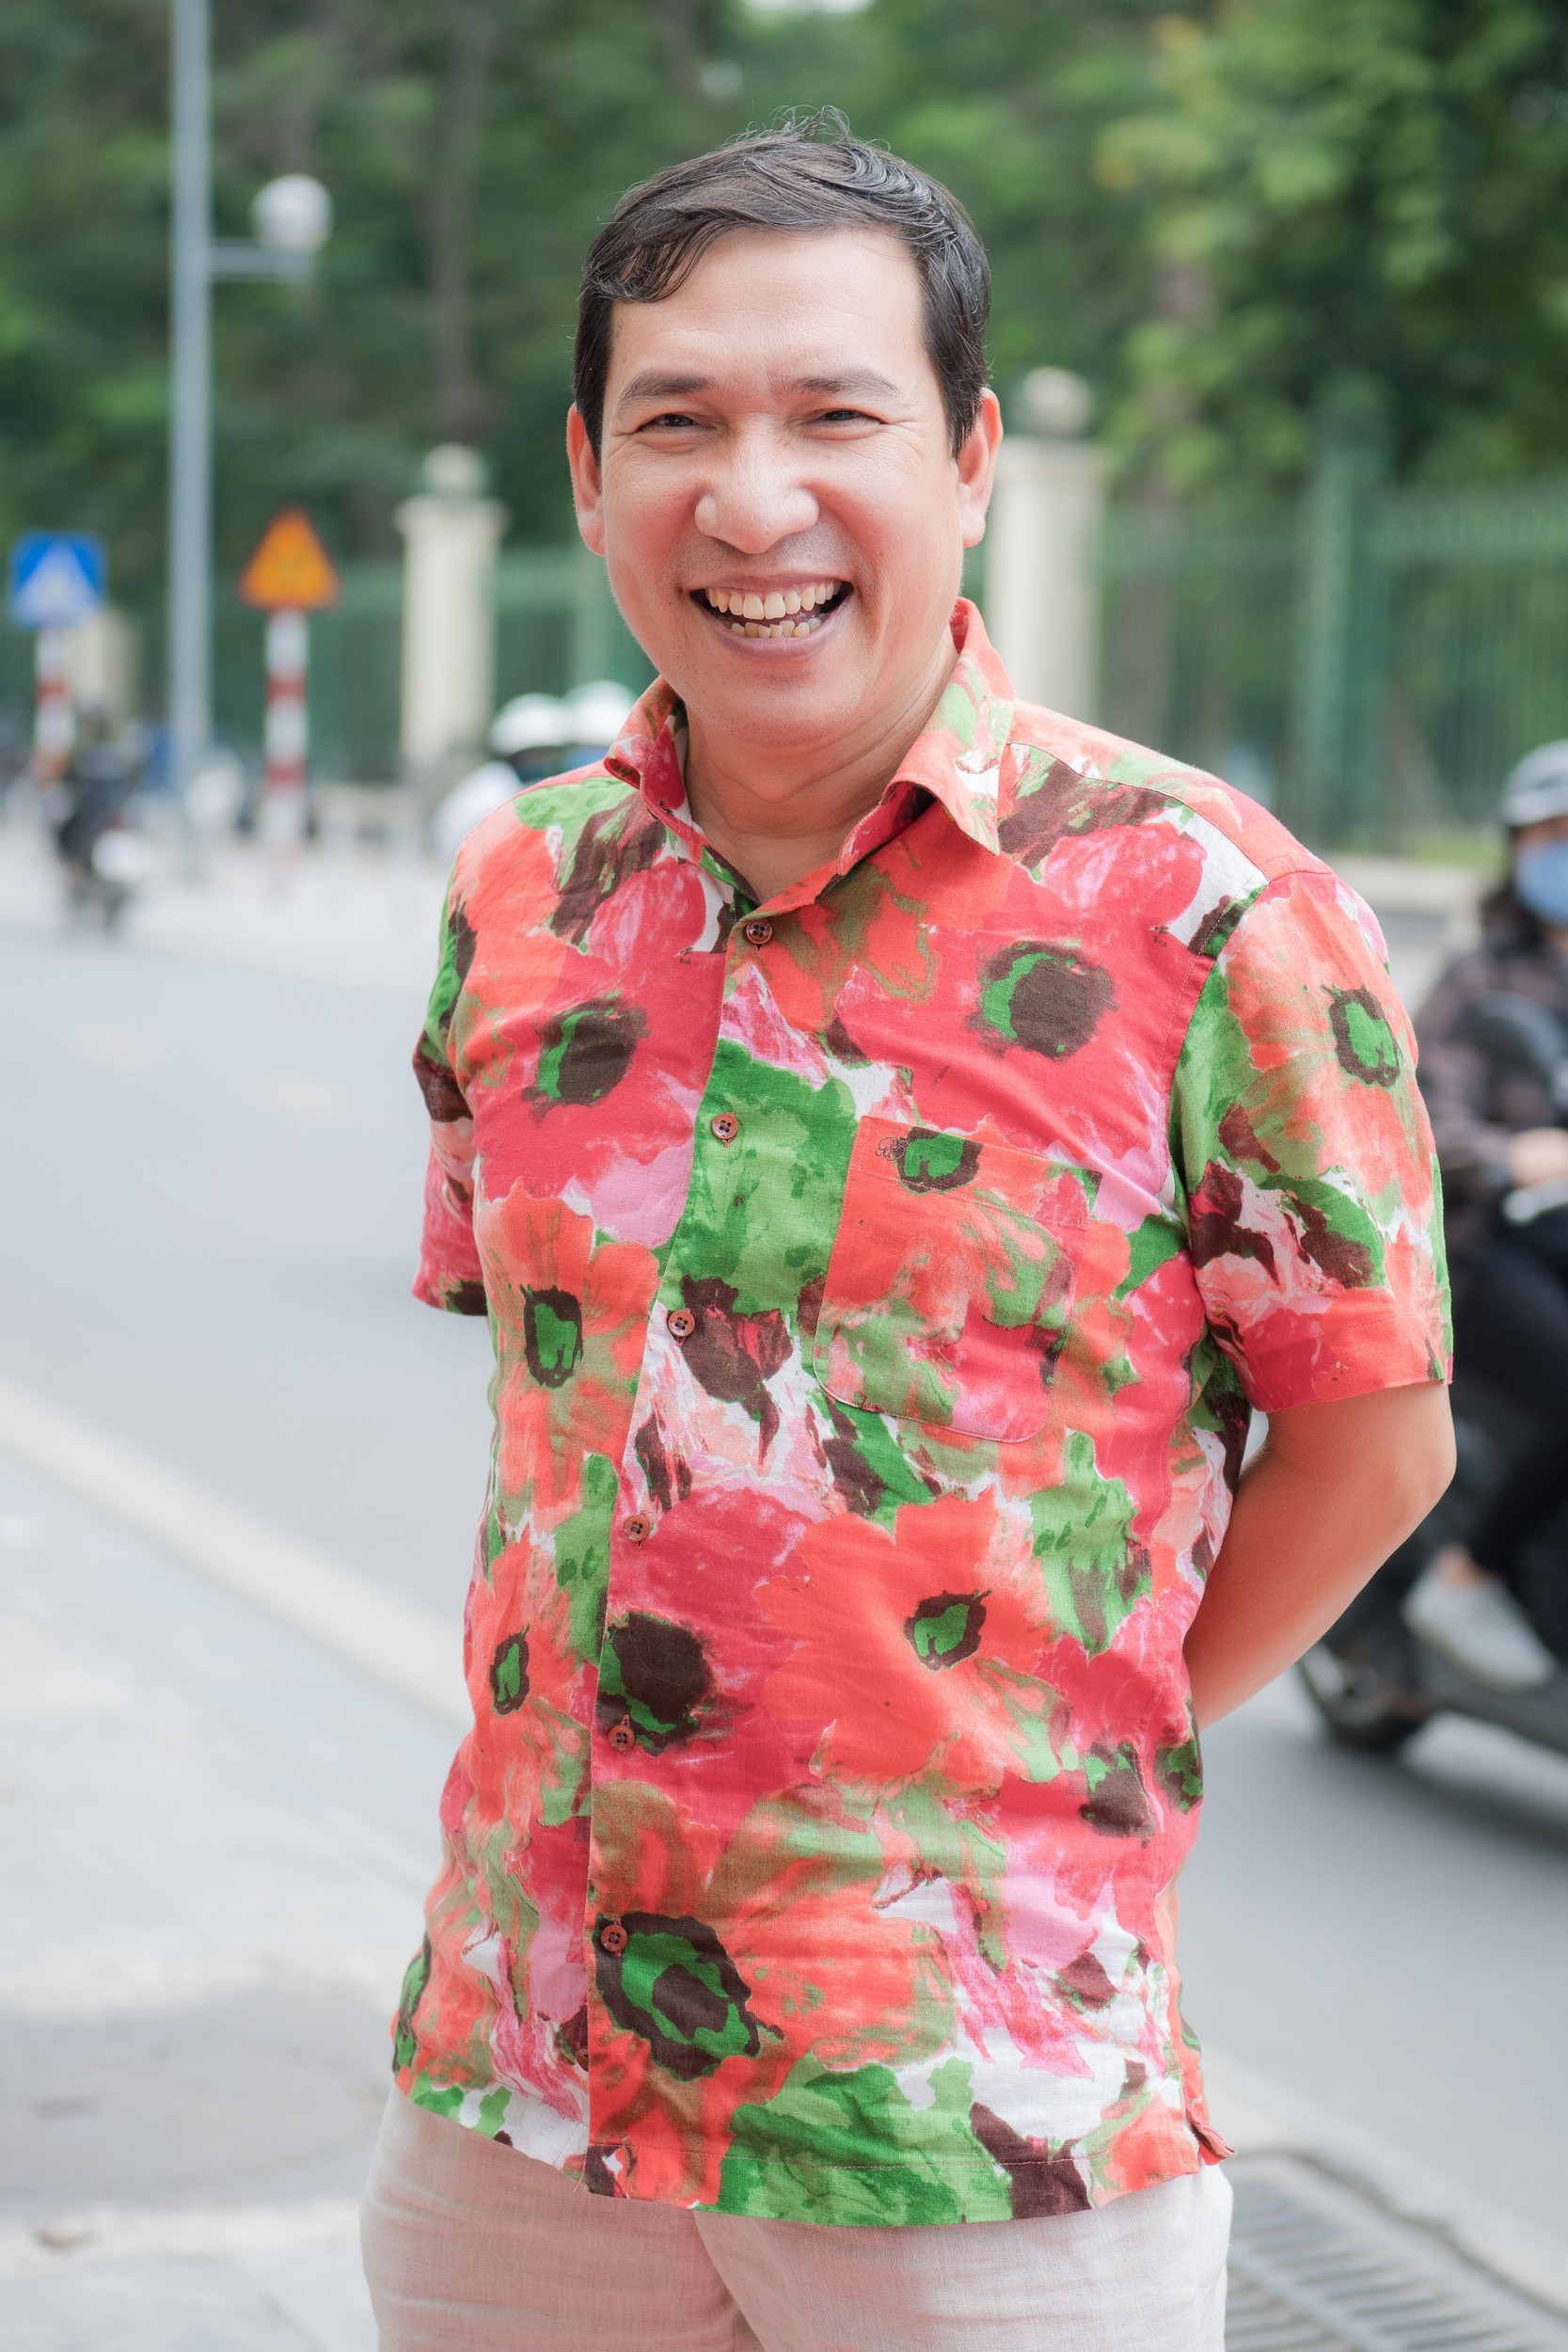 Cuộc sống của Quang Thắng ở tuổi 55: Mua nhà ở Hà Nội, vợ con lên ở thời gian lại dọn về quê - Ảnh 1.